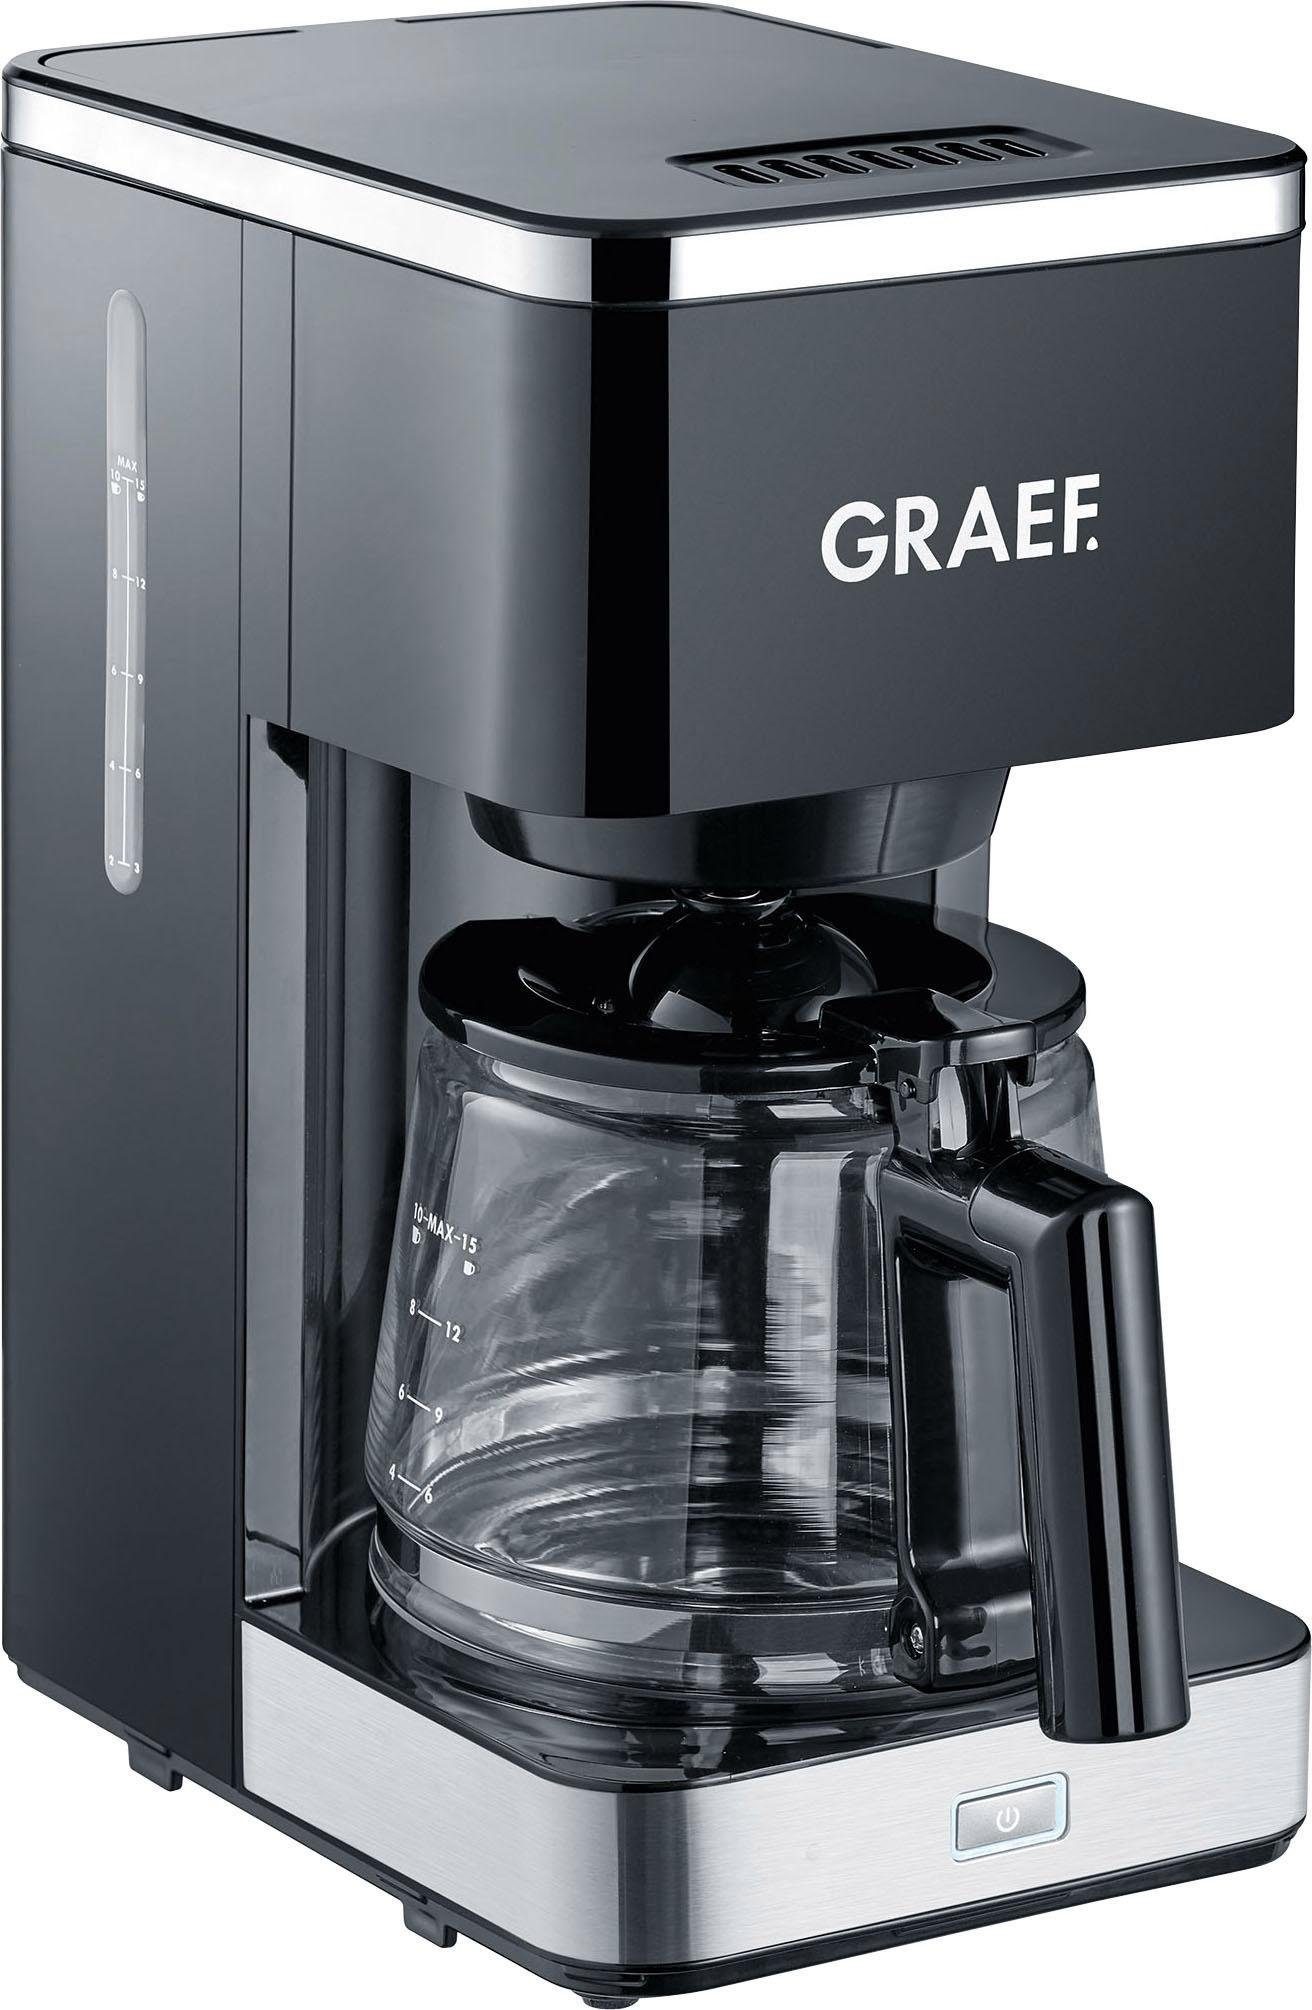 402, Filterkaffeemaschine FK Graef Korbfilter 1,25l 1x4, Kaffeekanne, mit Glaskanne, schwarz